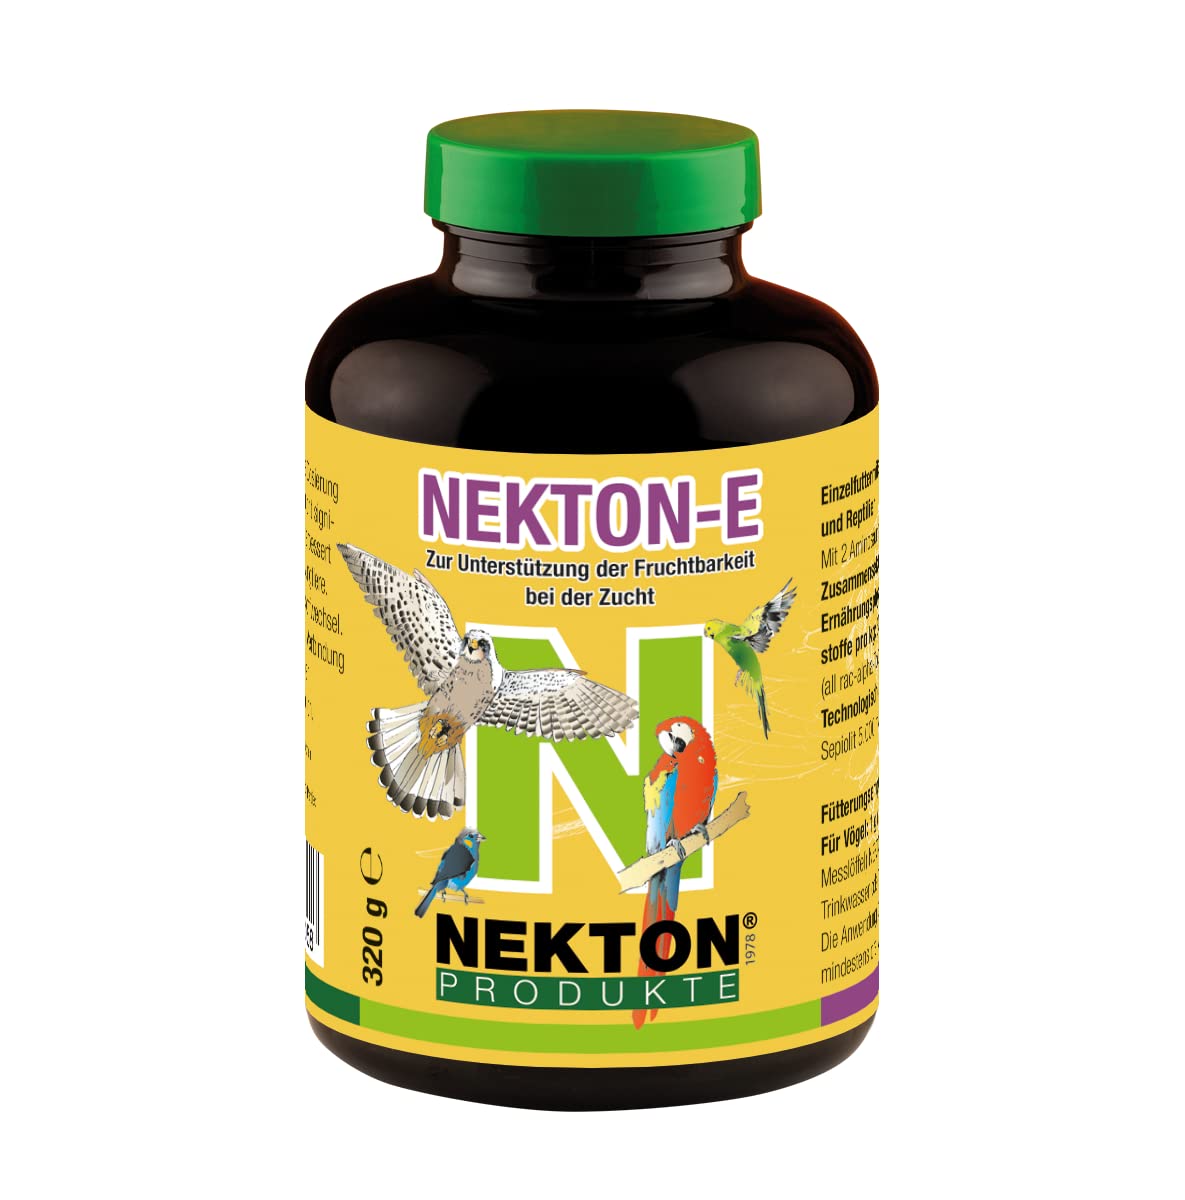 NEKTON-E | Vitamin-E-Präparat zur Zucht für Vögel und Reptilien | Made in Germany (350g)